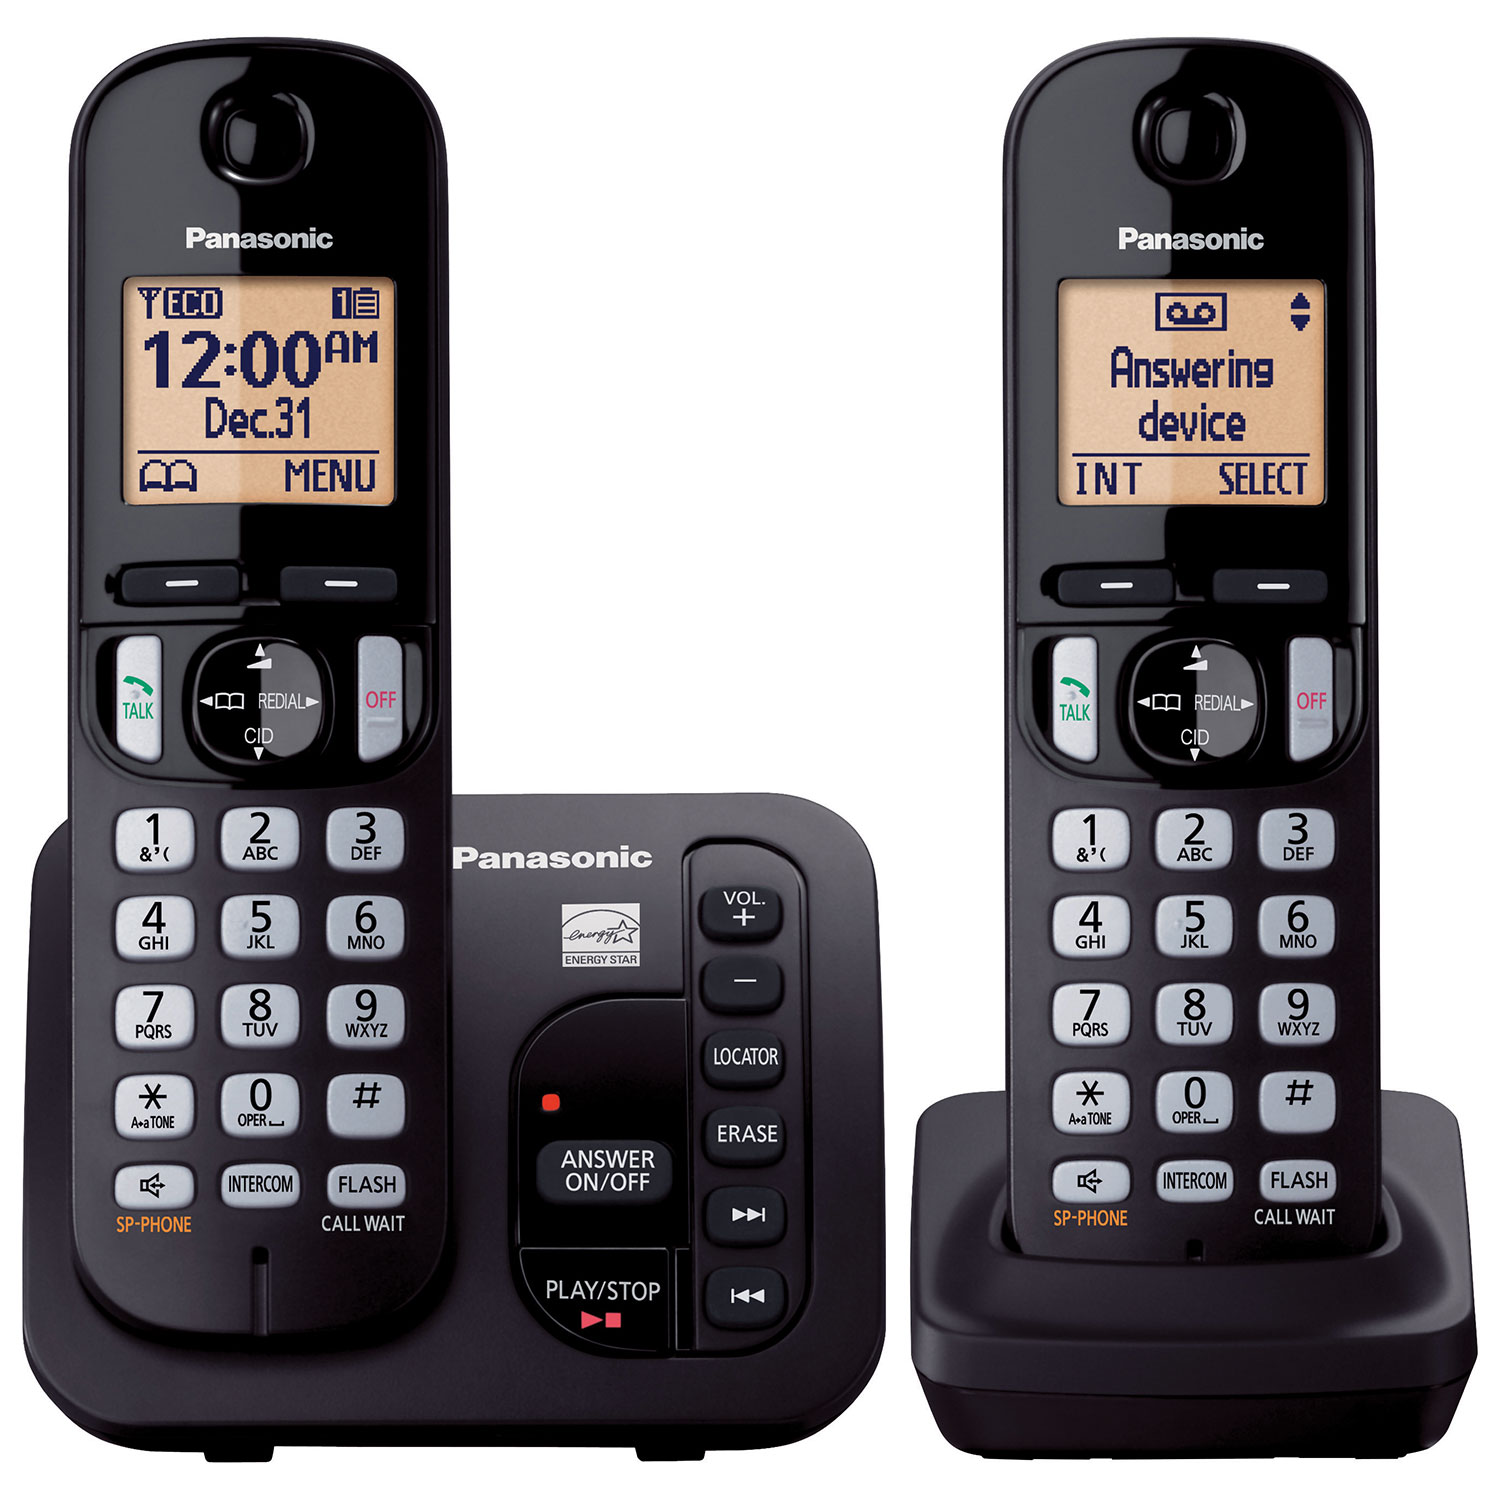 Fysic FX3960 - Téléphone fixe avec répondeur et bouton panique SOS sans fil,  noir